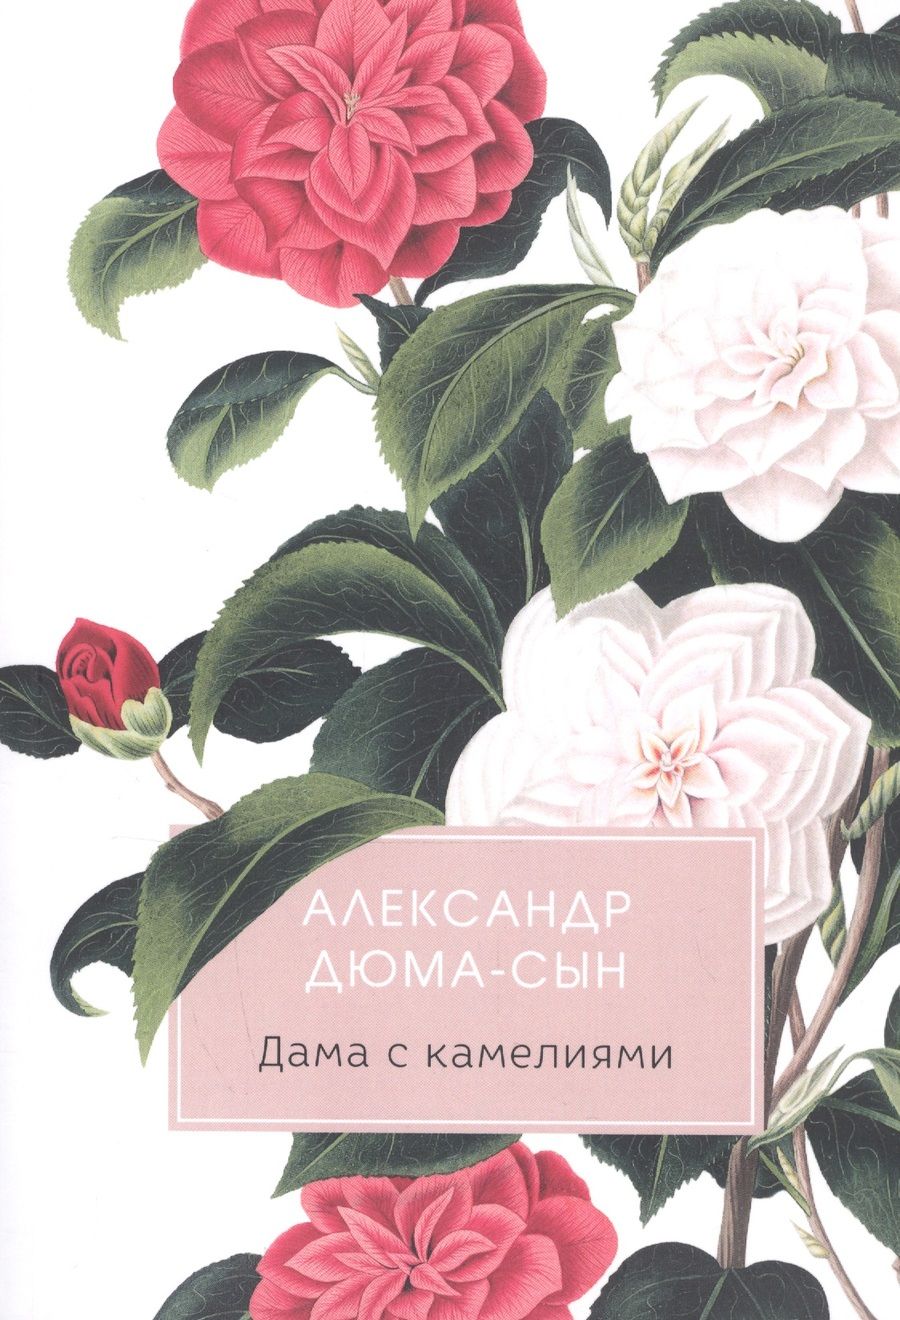 Обложка книги "Александр Дюма: Дама с камелиями"